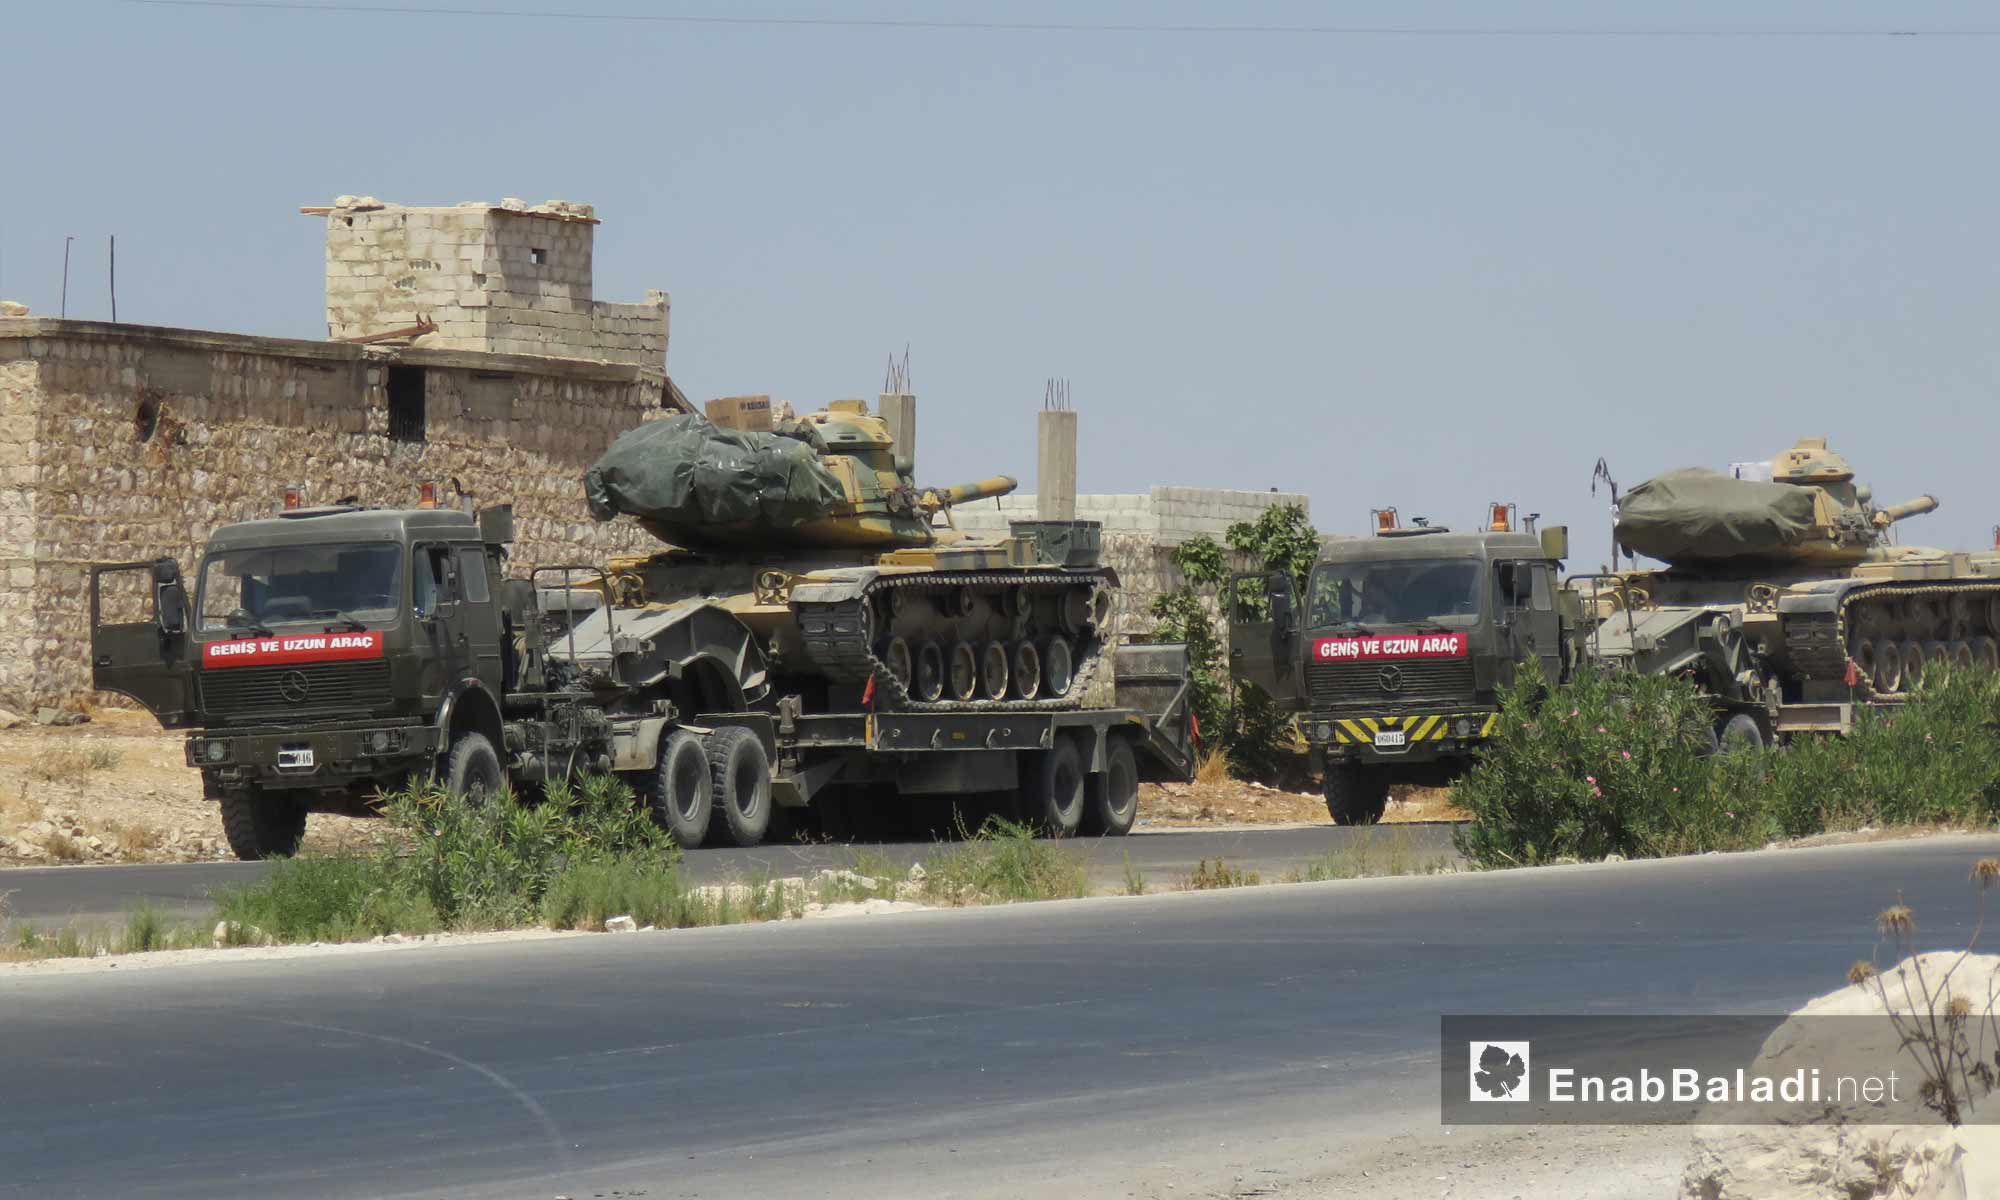 توقف رتل تركي بالقرب من قرية معرحطاط جنوب معرة النعمان في إدلب بعد استهدافه من قبل قوات النظام السوري- 19 من آب 2019 (عنب بلدي)